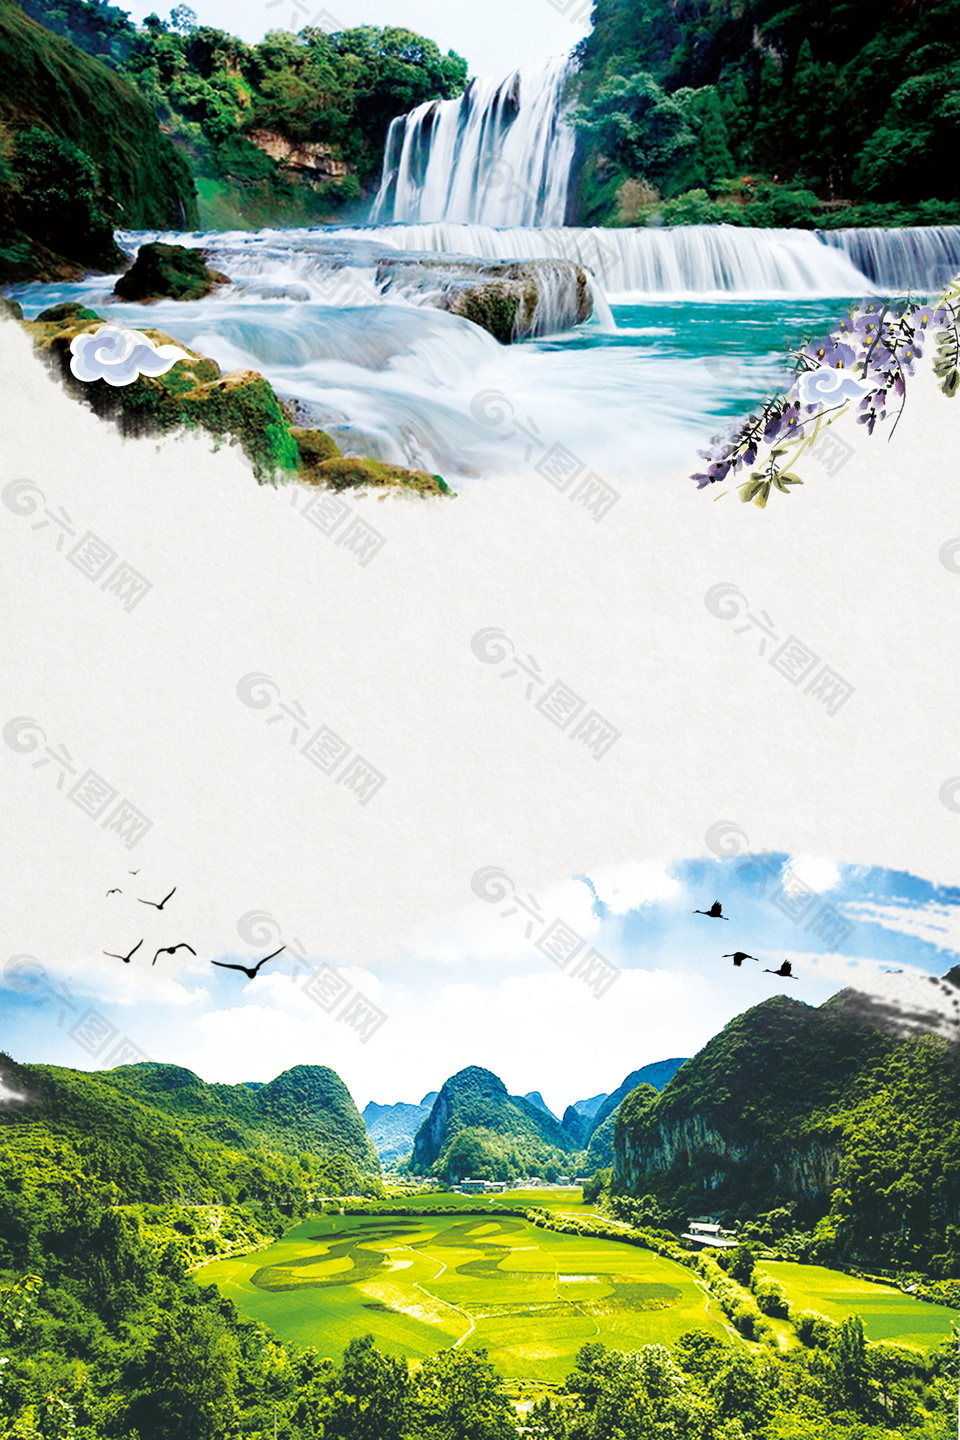 大气贵州黄果树瀑布自然风景广告背景素材